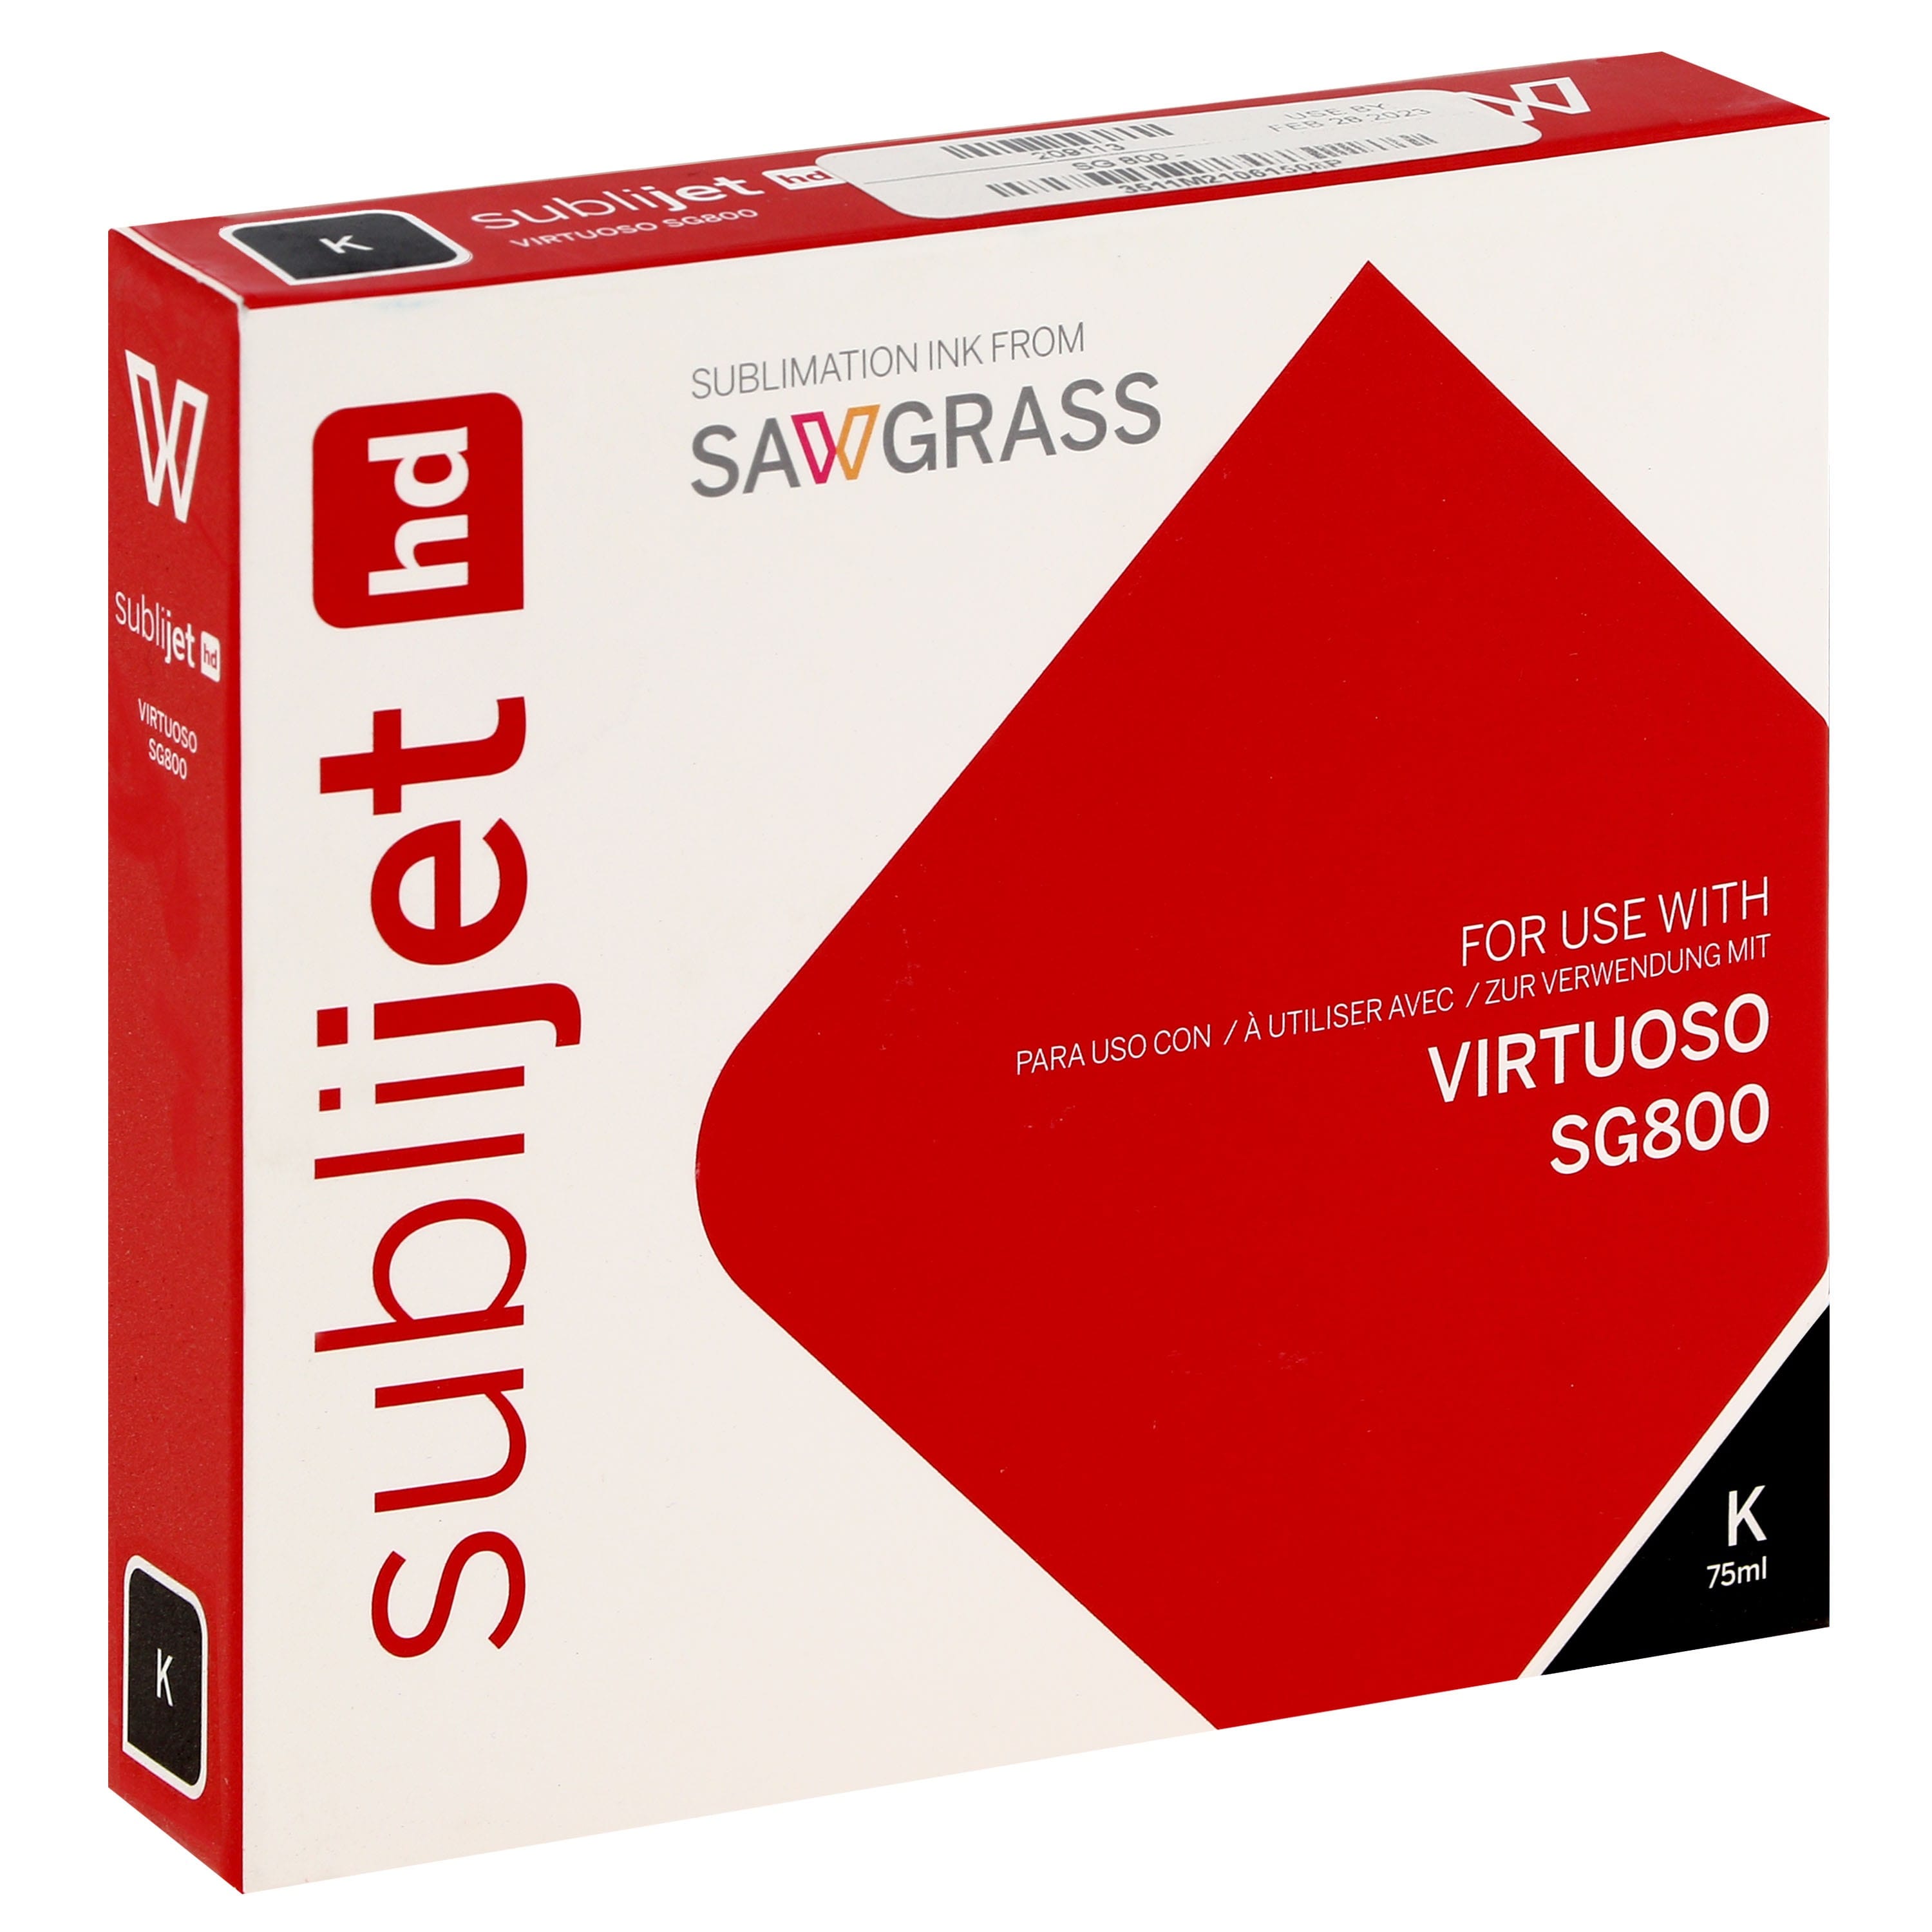 SAWGRASS - Encre sublimation Sublijet - Noire 75ml - pour Sawgrass SG800